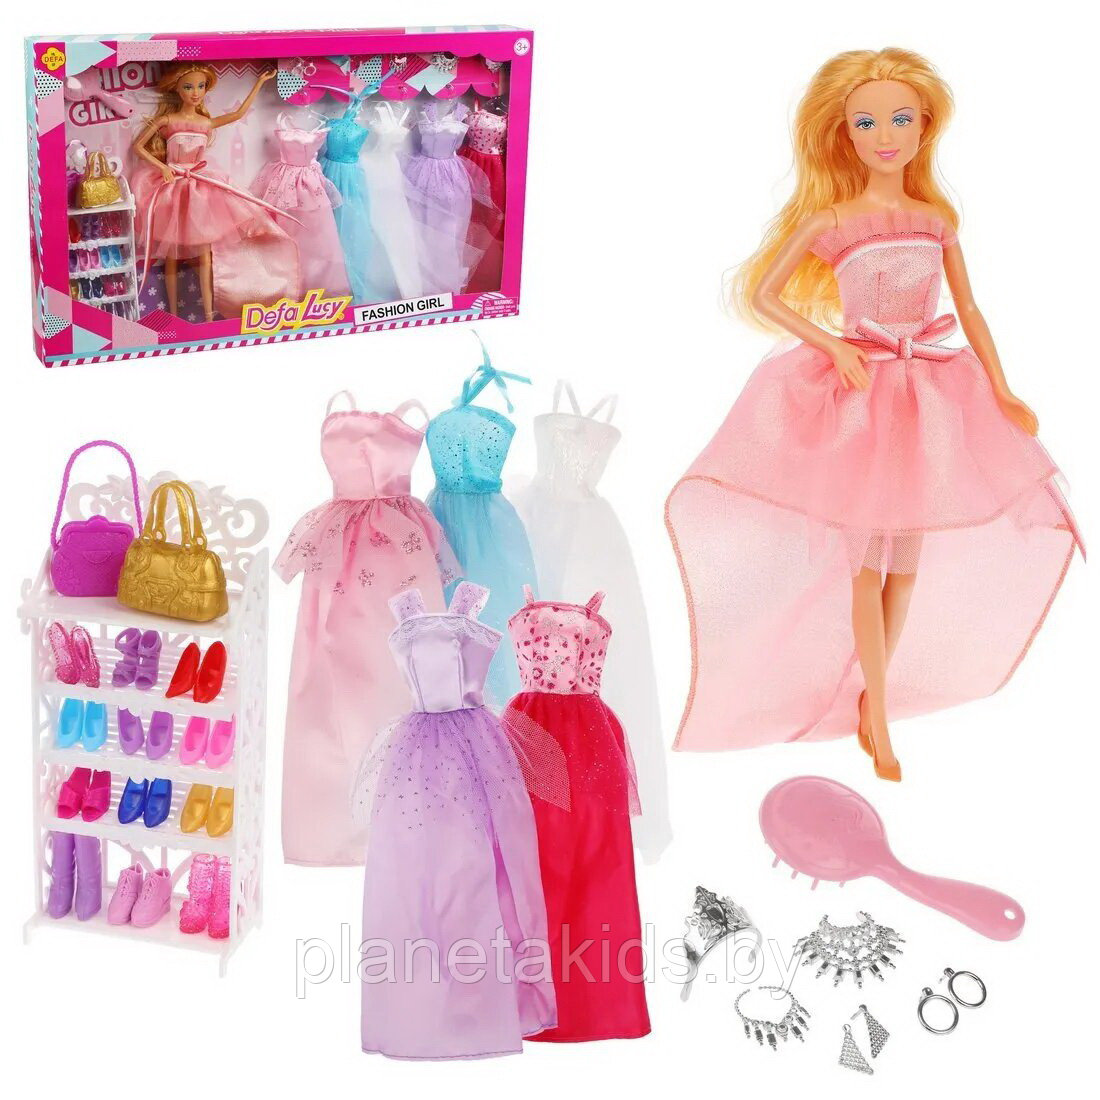 Кукла барби DEFA LUCY с набором платьев, обуви и аксессуаров, арт. 8446